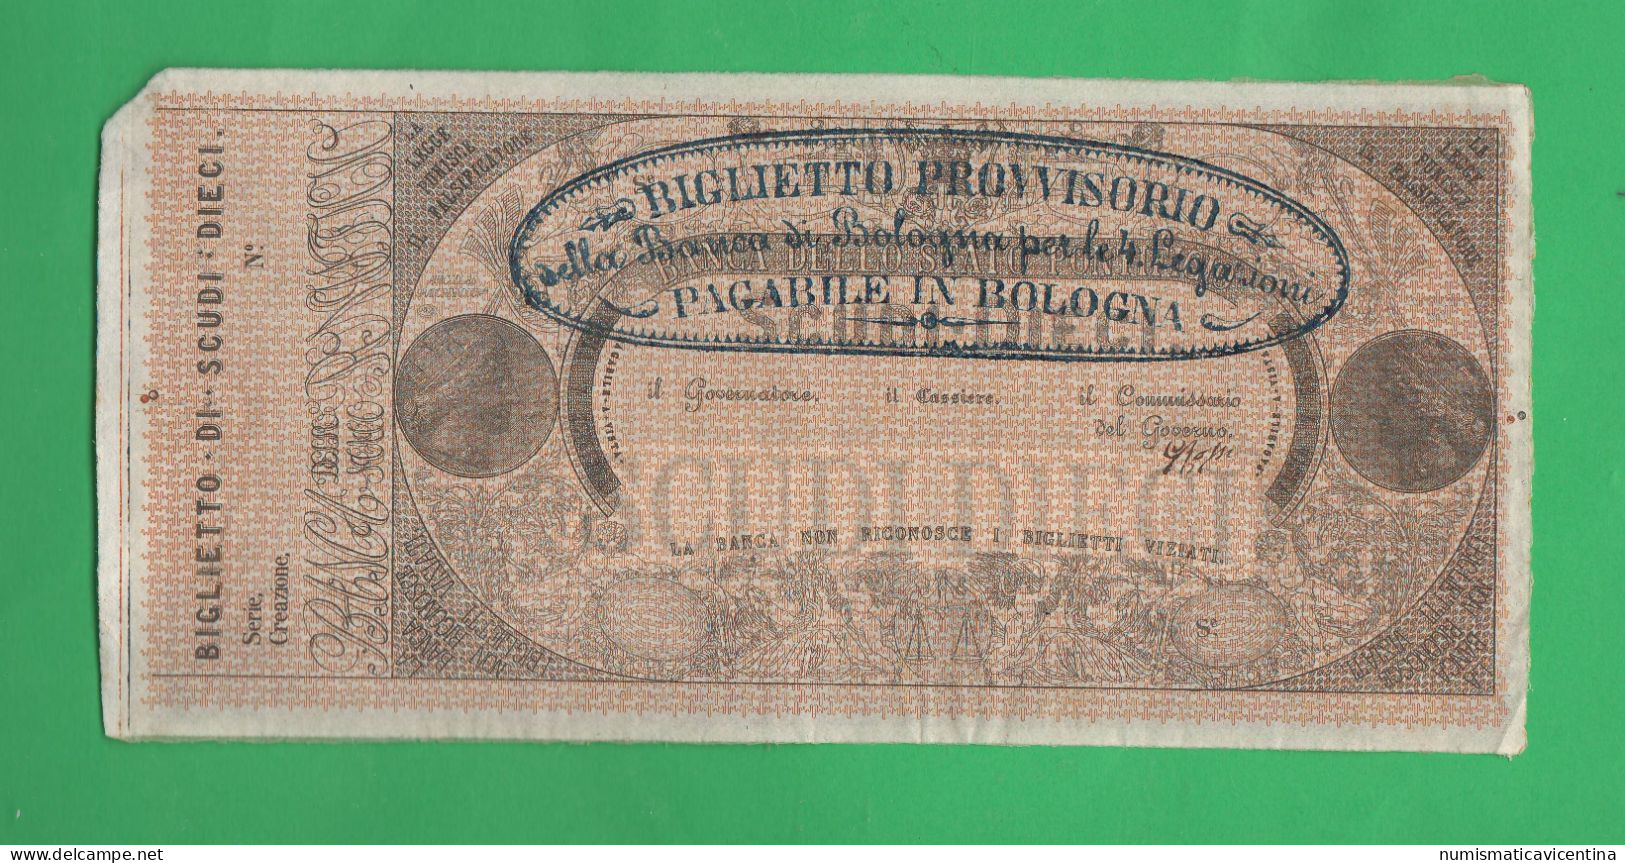 Stato Pontificio 10 Scudi 1855 Biglietto Provvisorio Banca Pontificia Quattro Legazioni Pagabile In BOLOGNA - Vatikan